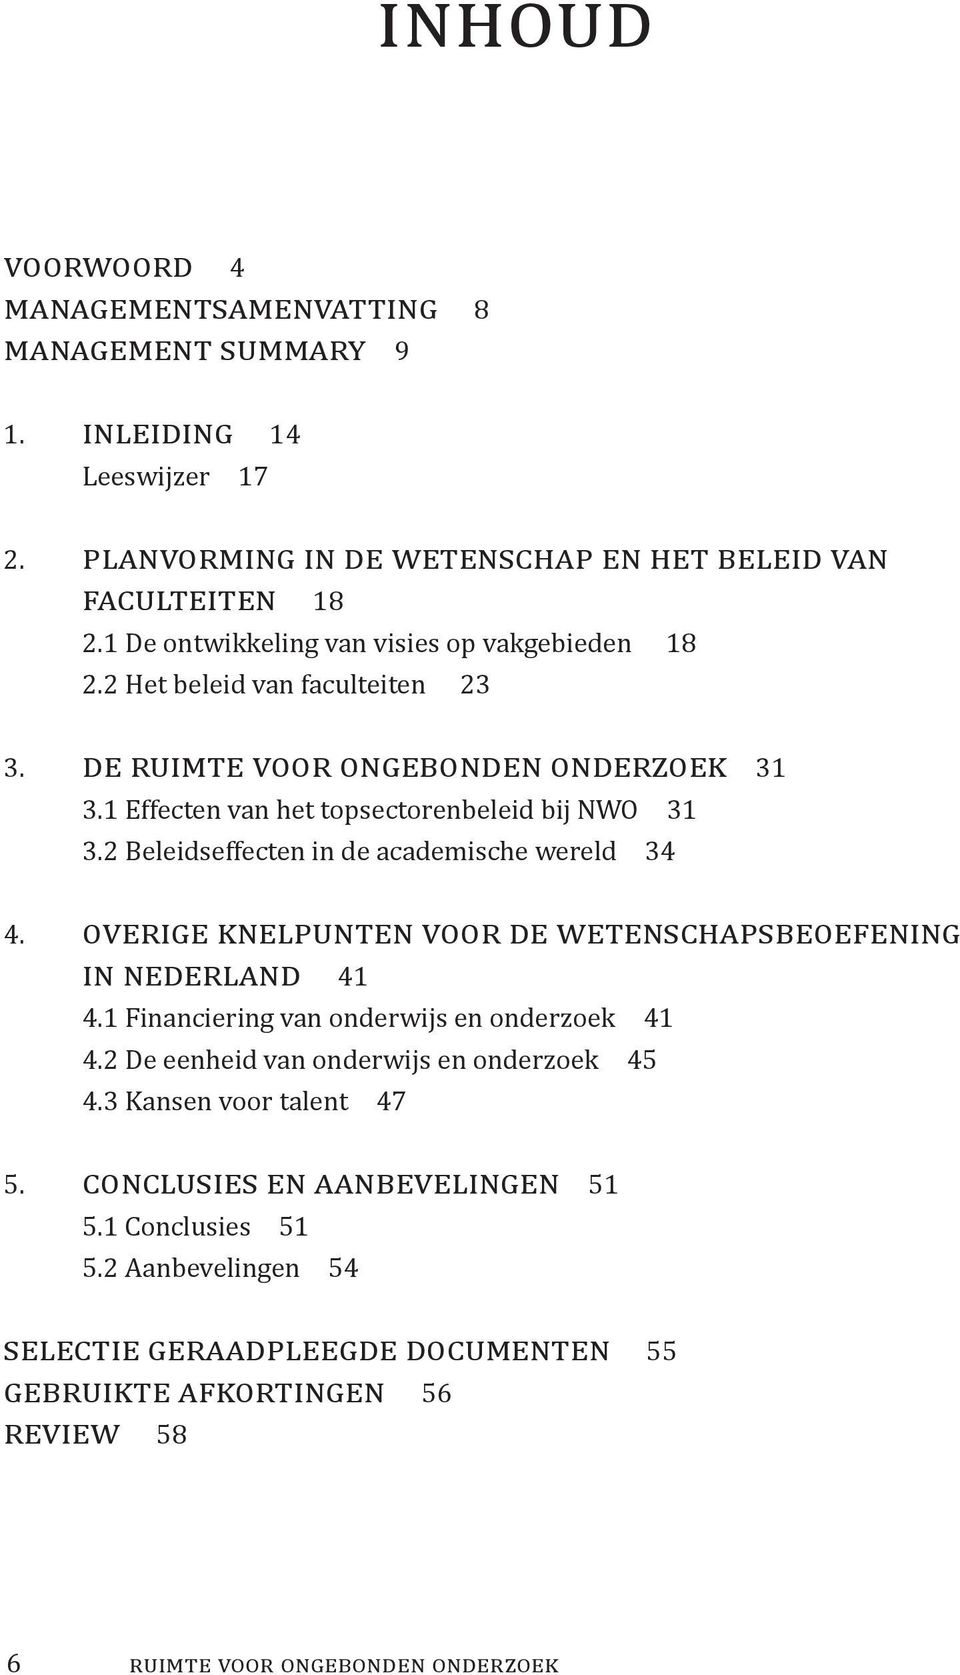 2 Beleidseffecten in de academische wereld 34 4. overige knelpunten voor de wetenschapsbeoefening in nederland 41 4.1 Financiering van onderwijs en onderzoek 41 4.